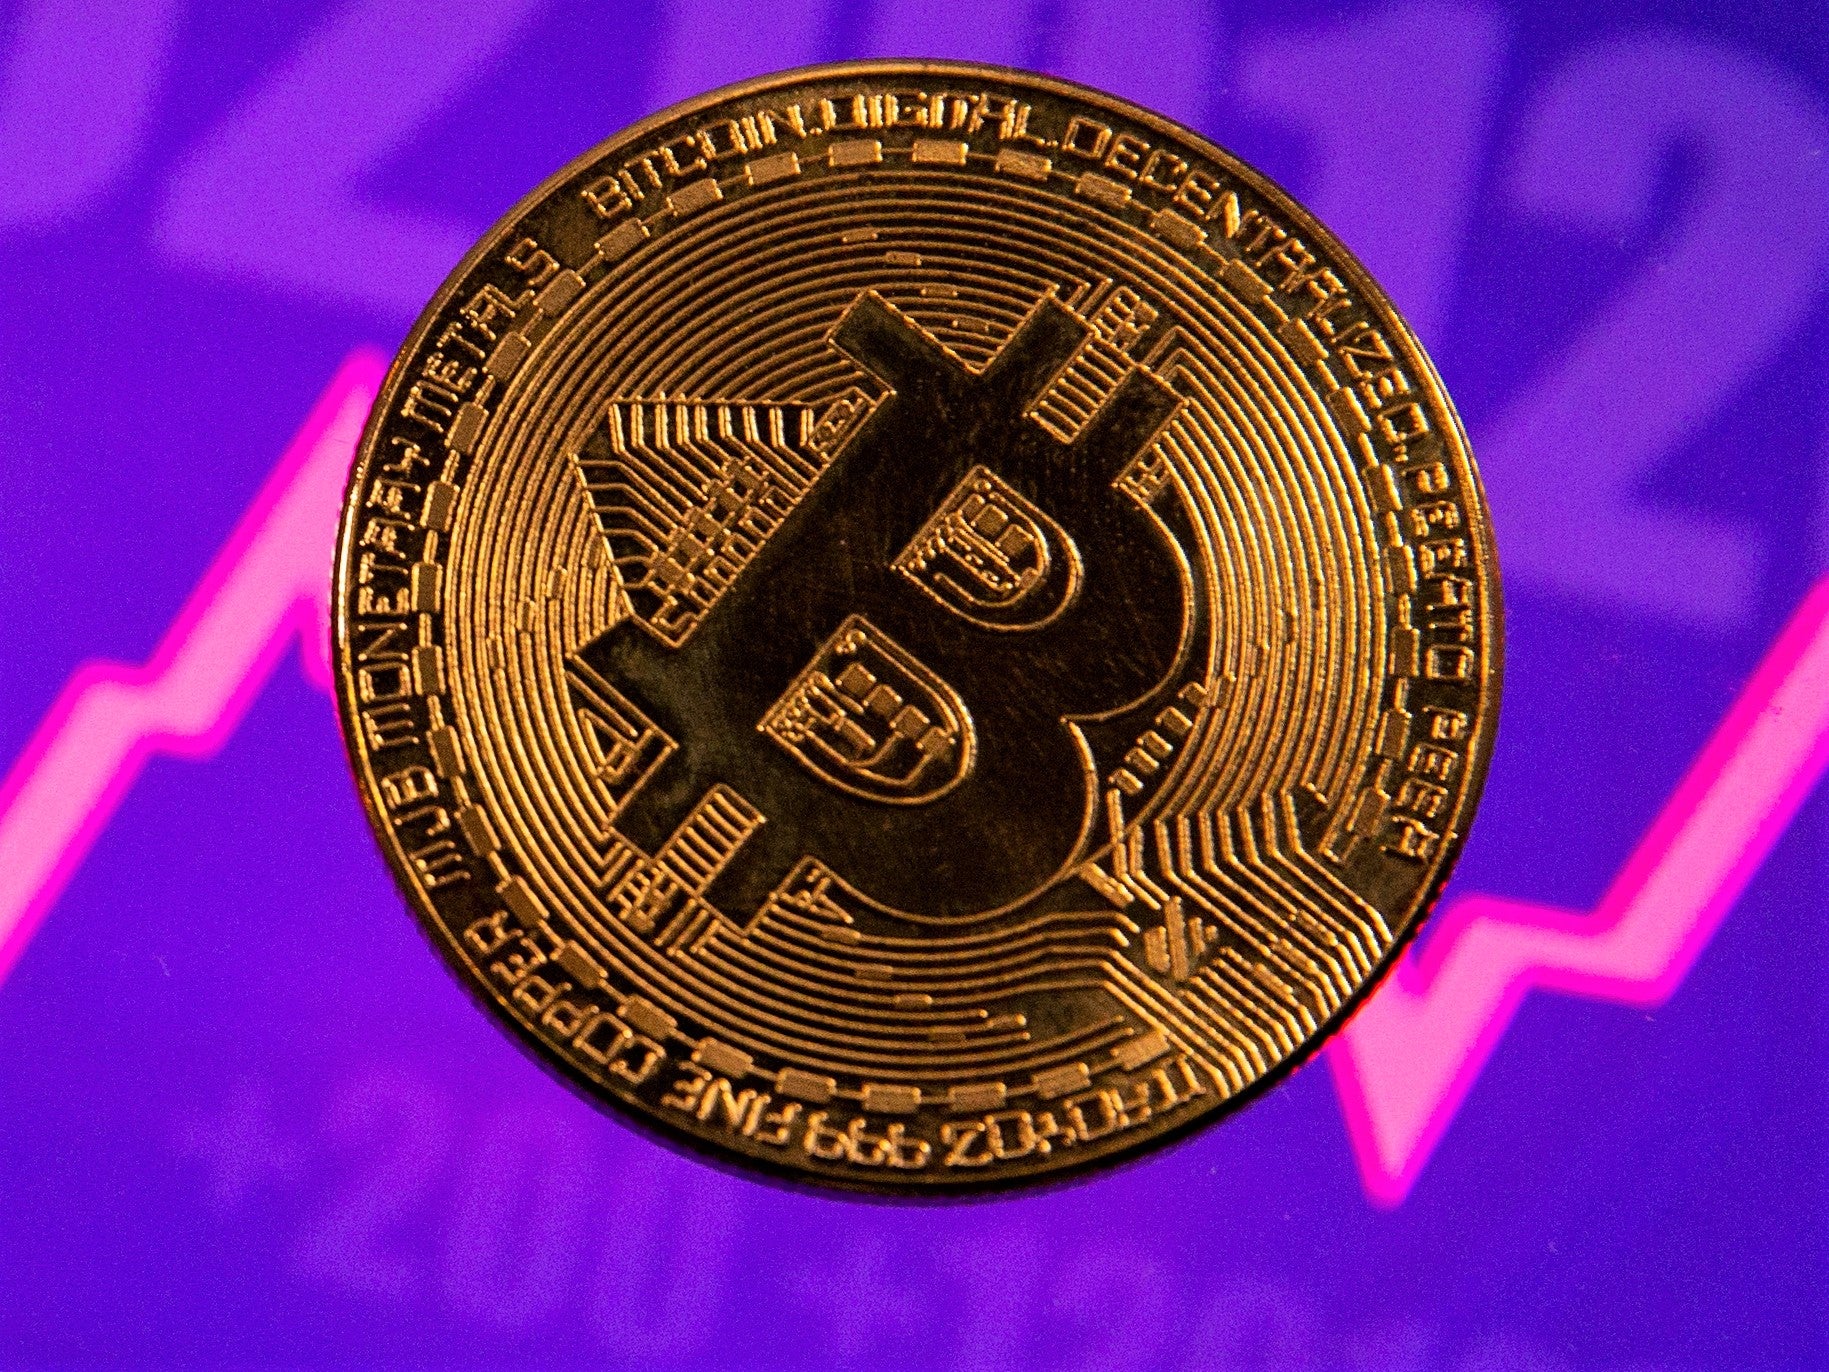 Bitcoin has already broken several price records in 2021